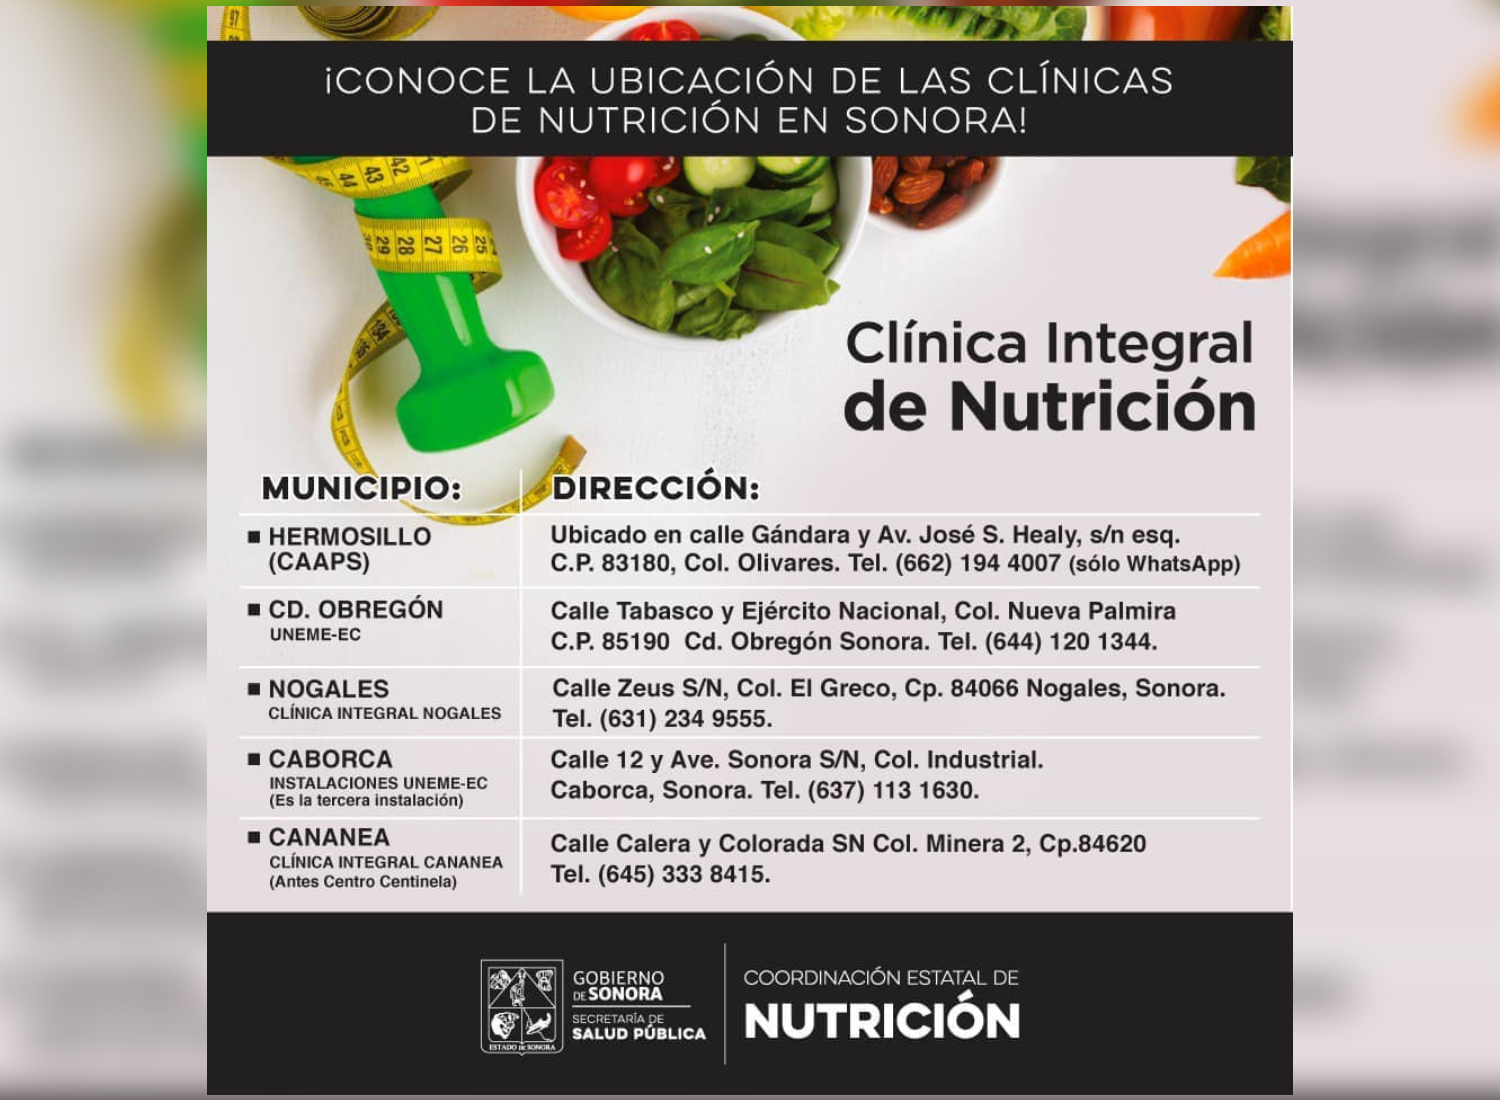 El estado de Sonora cuenta con cinco Clínicas Integrales de Nutrición